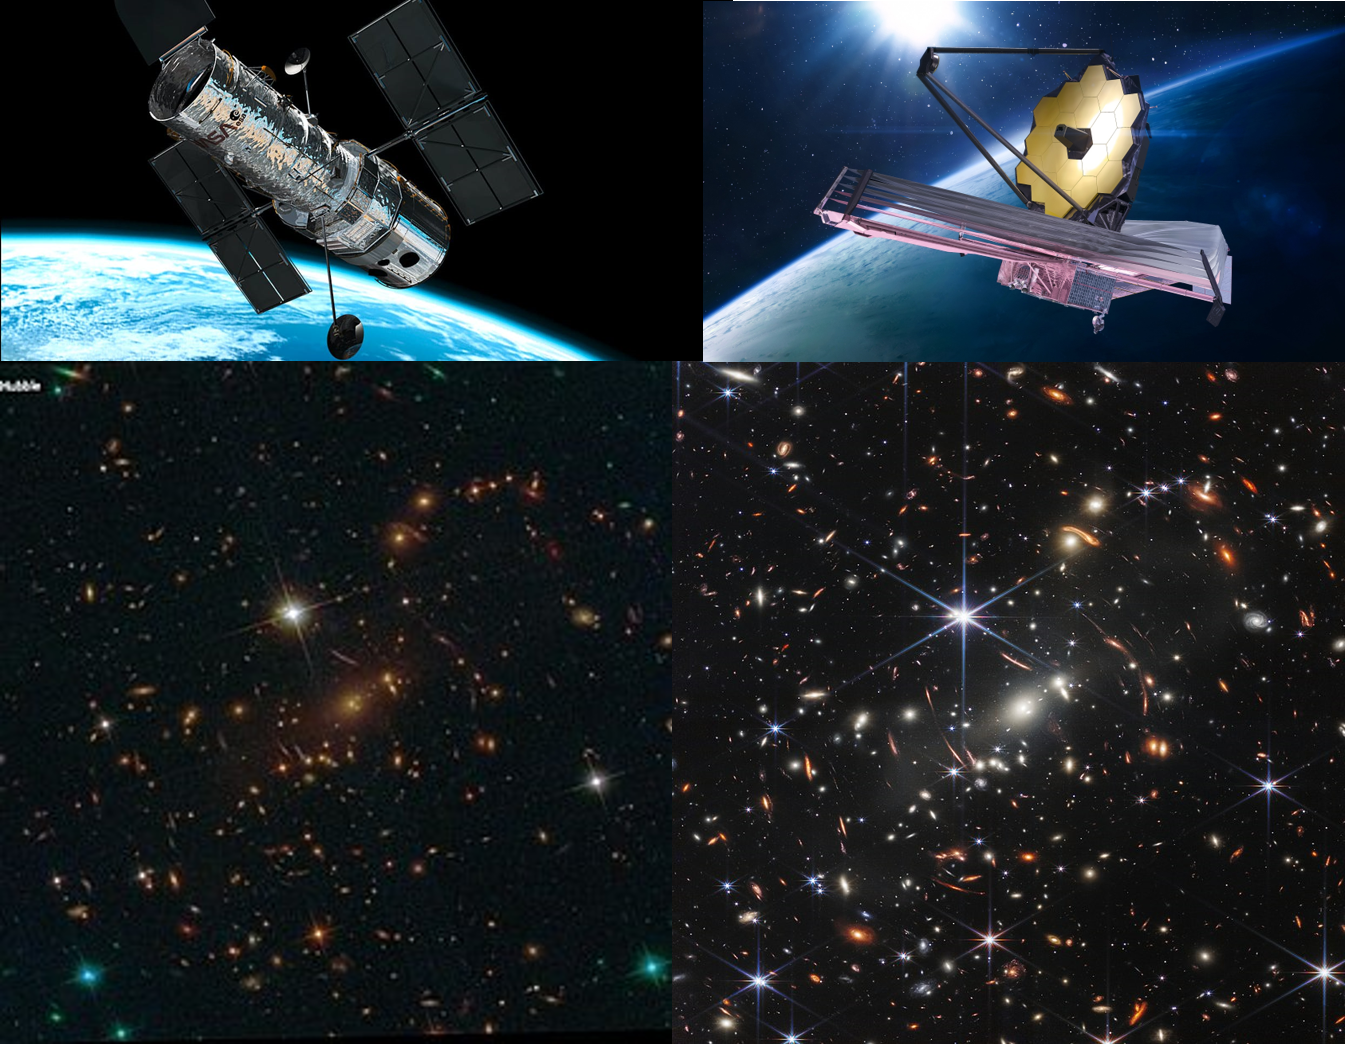 Porovnání fotografie stejné oblasti (kupy galaxií SMACS 0723) pomoci Hubblova a Webbova dalekohledu. Webbův dalekohled má průměr 6,5 m a u Hubblova dalekohledu je to 2,4 m. Díky posunu Webbova dalekohledu do infračervené oblasti se v něm dramaticky z